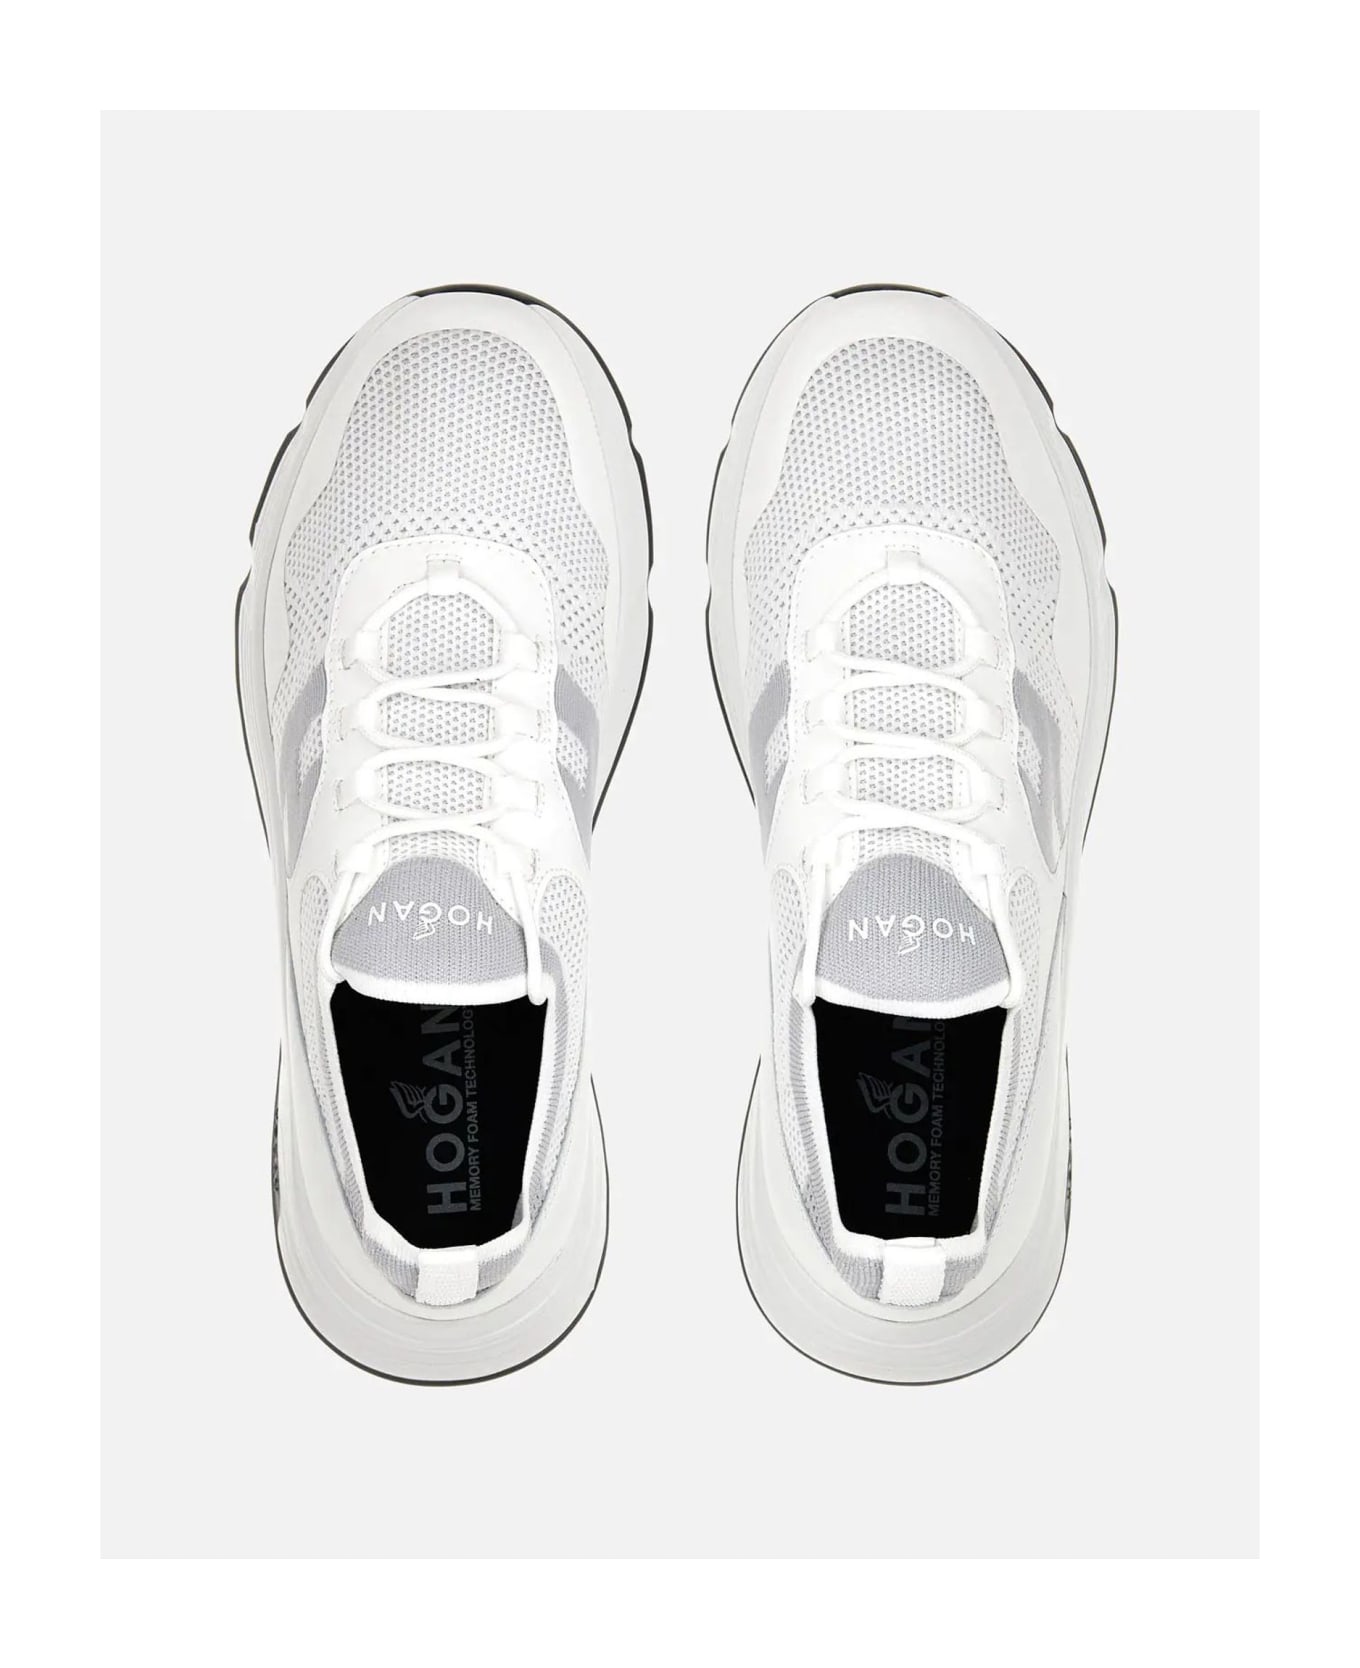 Hogan Hyperlight Knit Sneakers - White